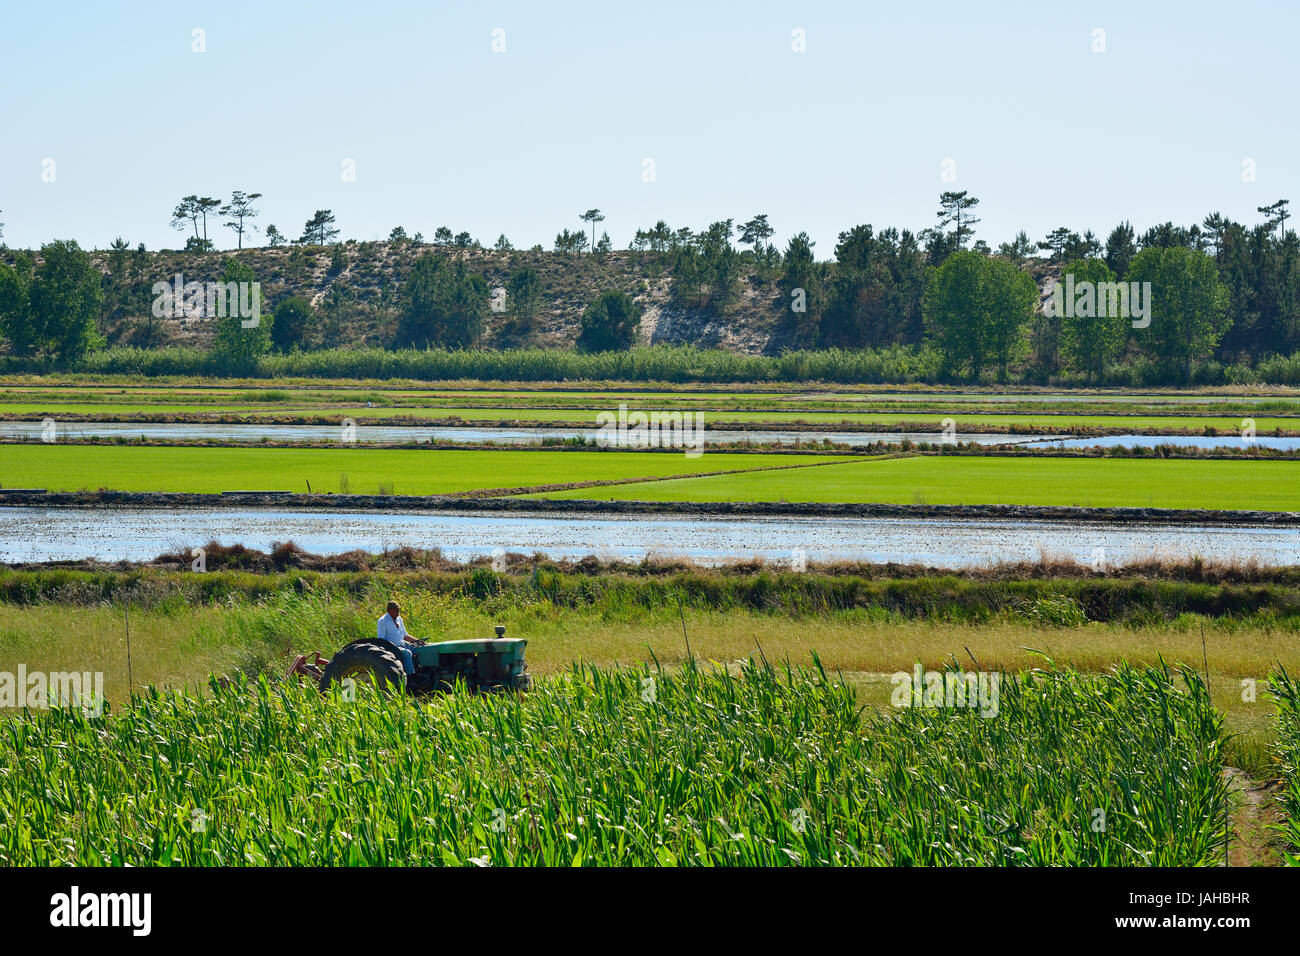 Rice fields and corn field at Comporta, Alentejo, Portugal Stock Photo